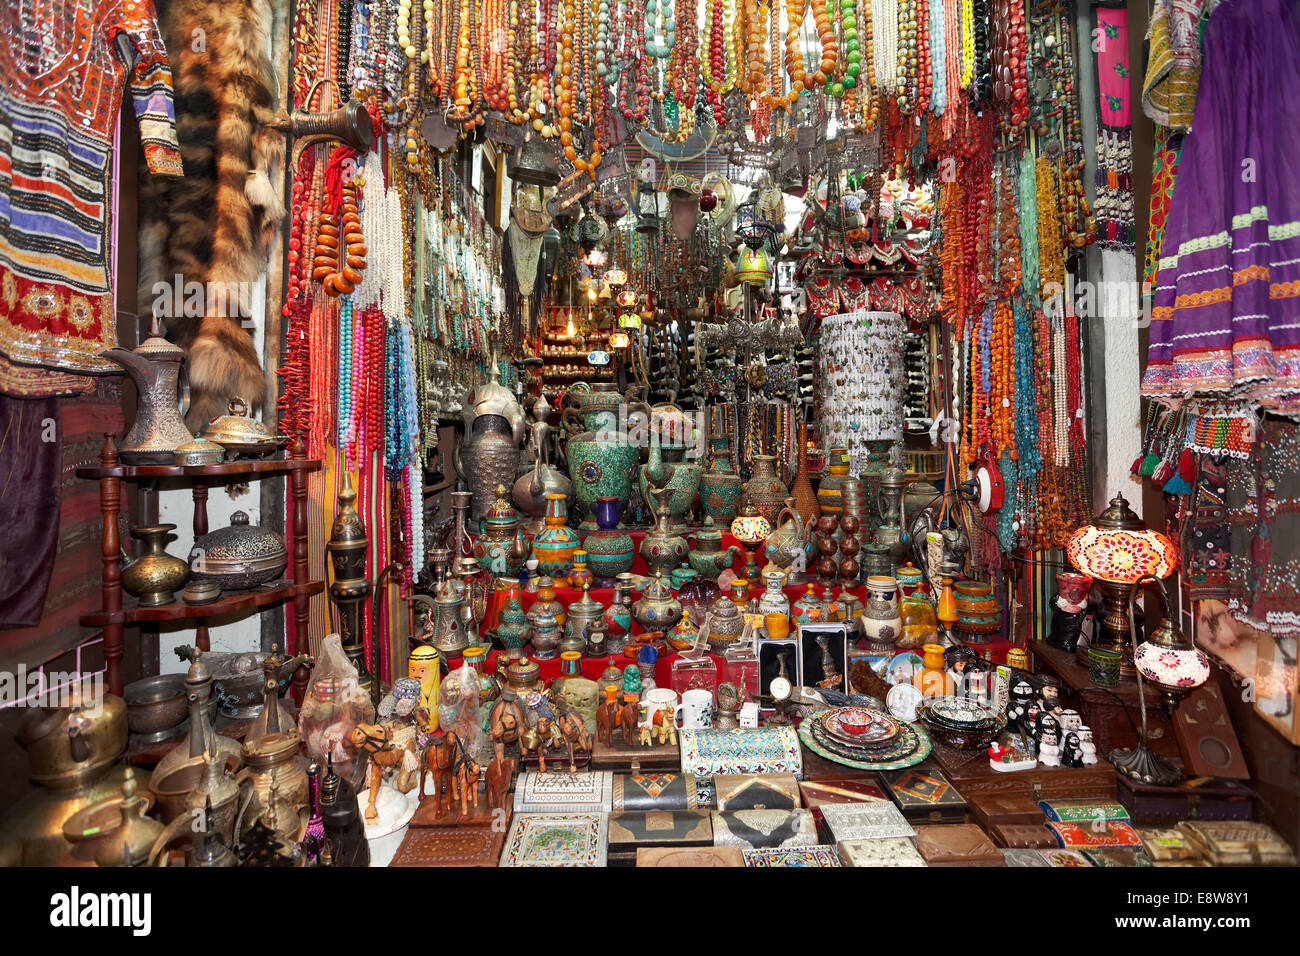 Bunt waren und Souvenirs in einem Geschäft in Muttrah Souq Markt, Muttrah, Muscat, Oman Stockfoto